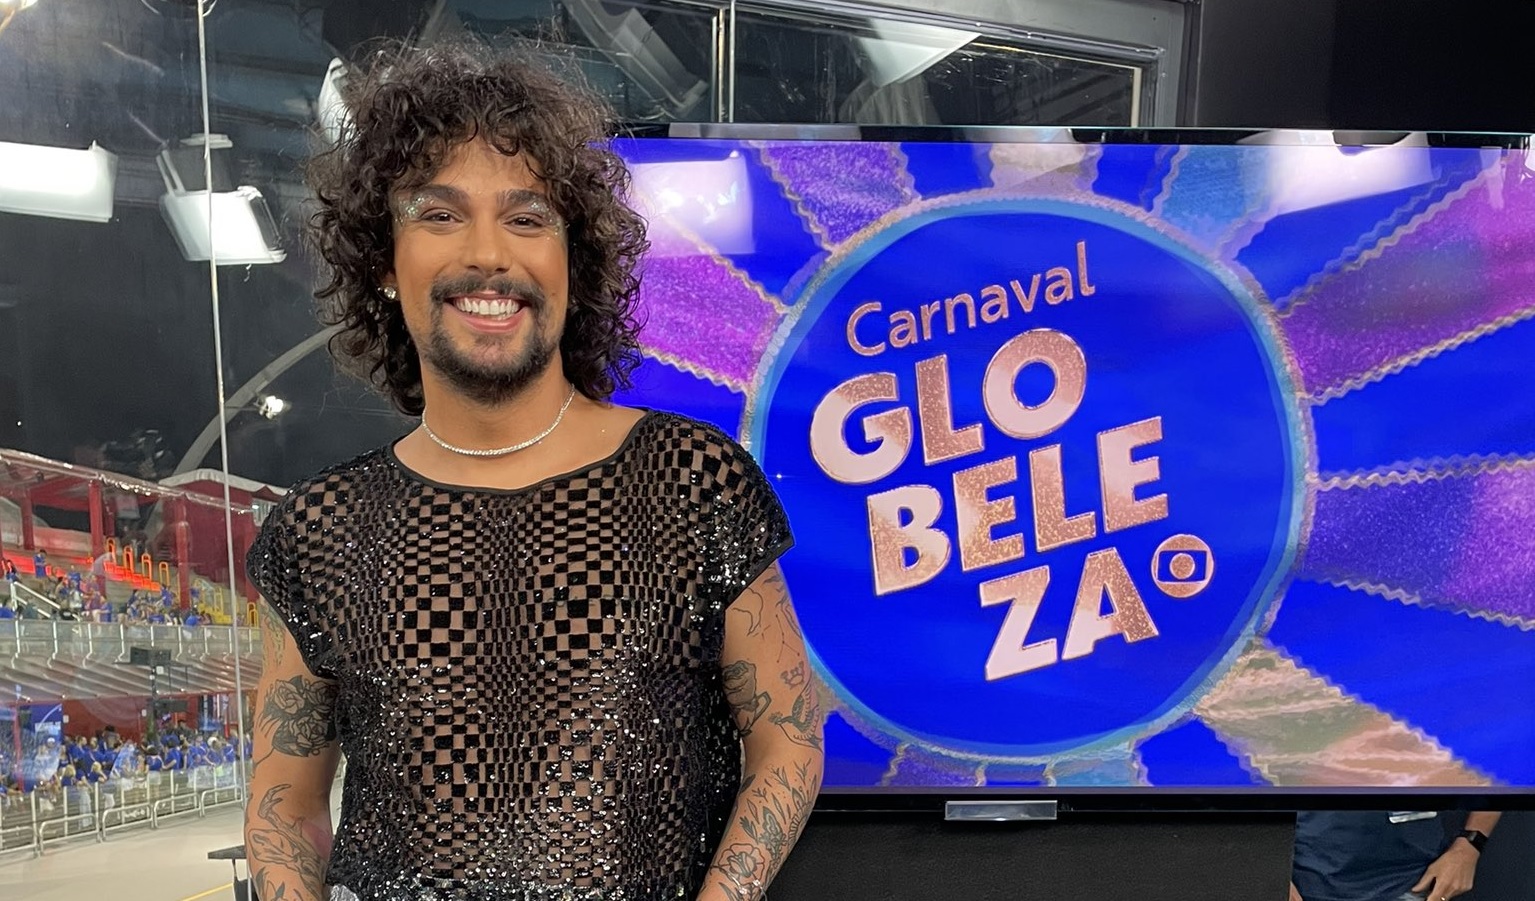 “Não nasci herdeira”, dispara Vitor diCastro após críticas sobre transmissão do Carnaval na Globo